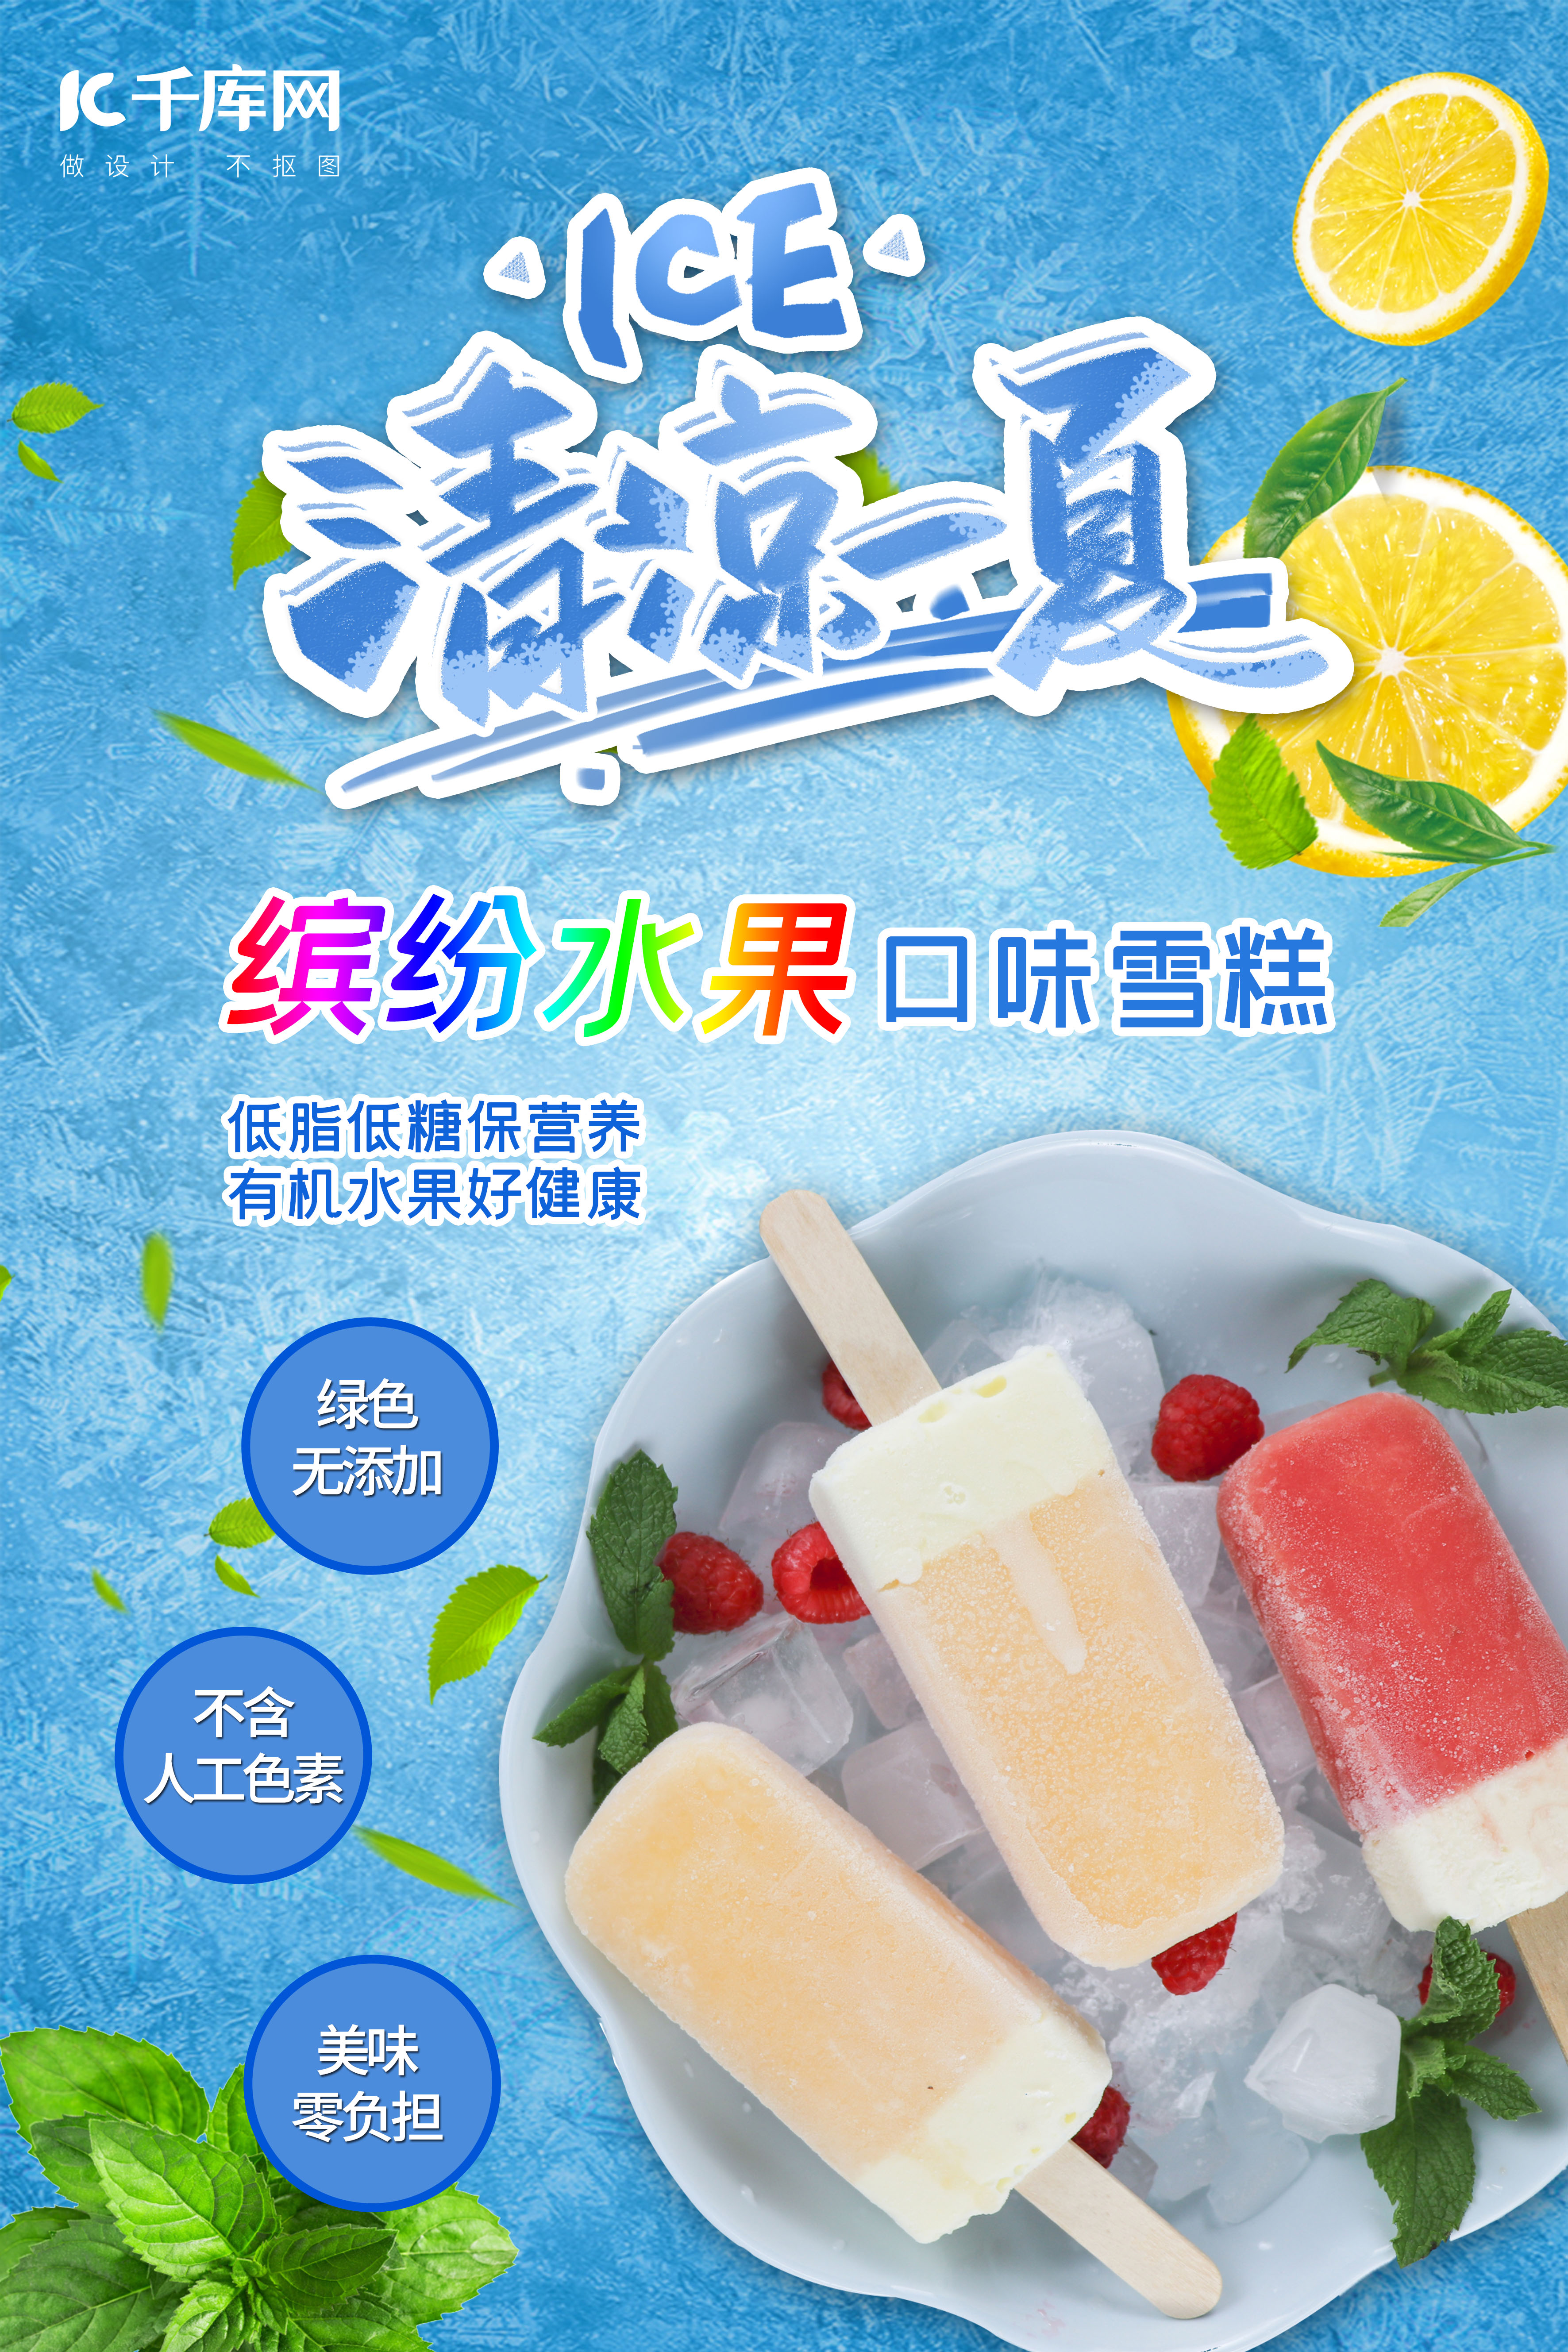 夏日清凉冰激凌雪糕系列主题海报图片